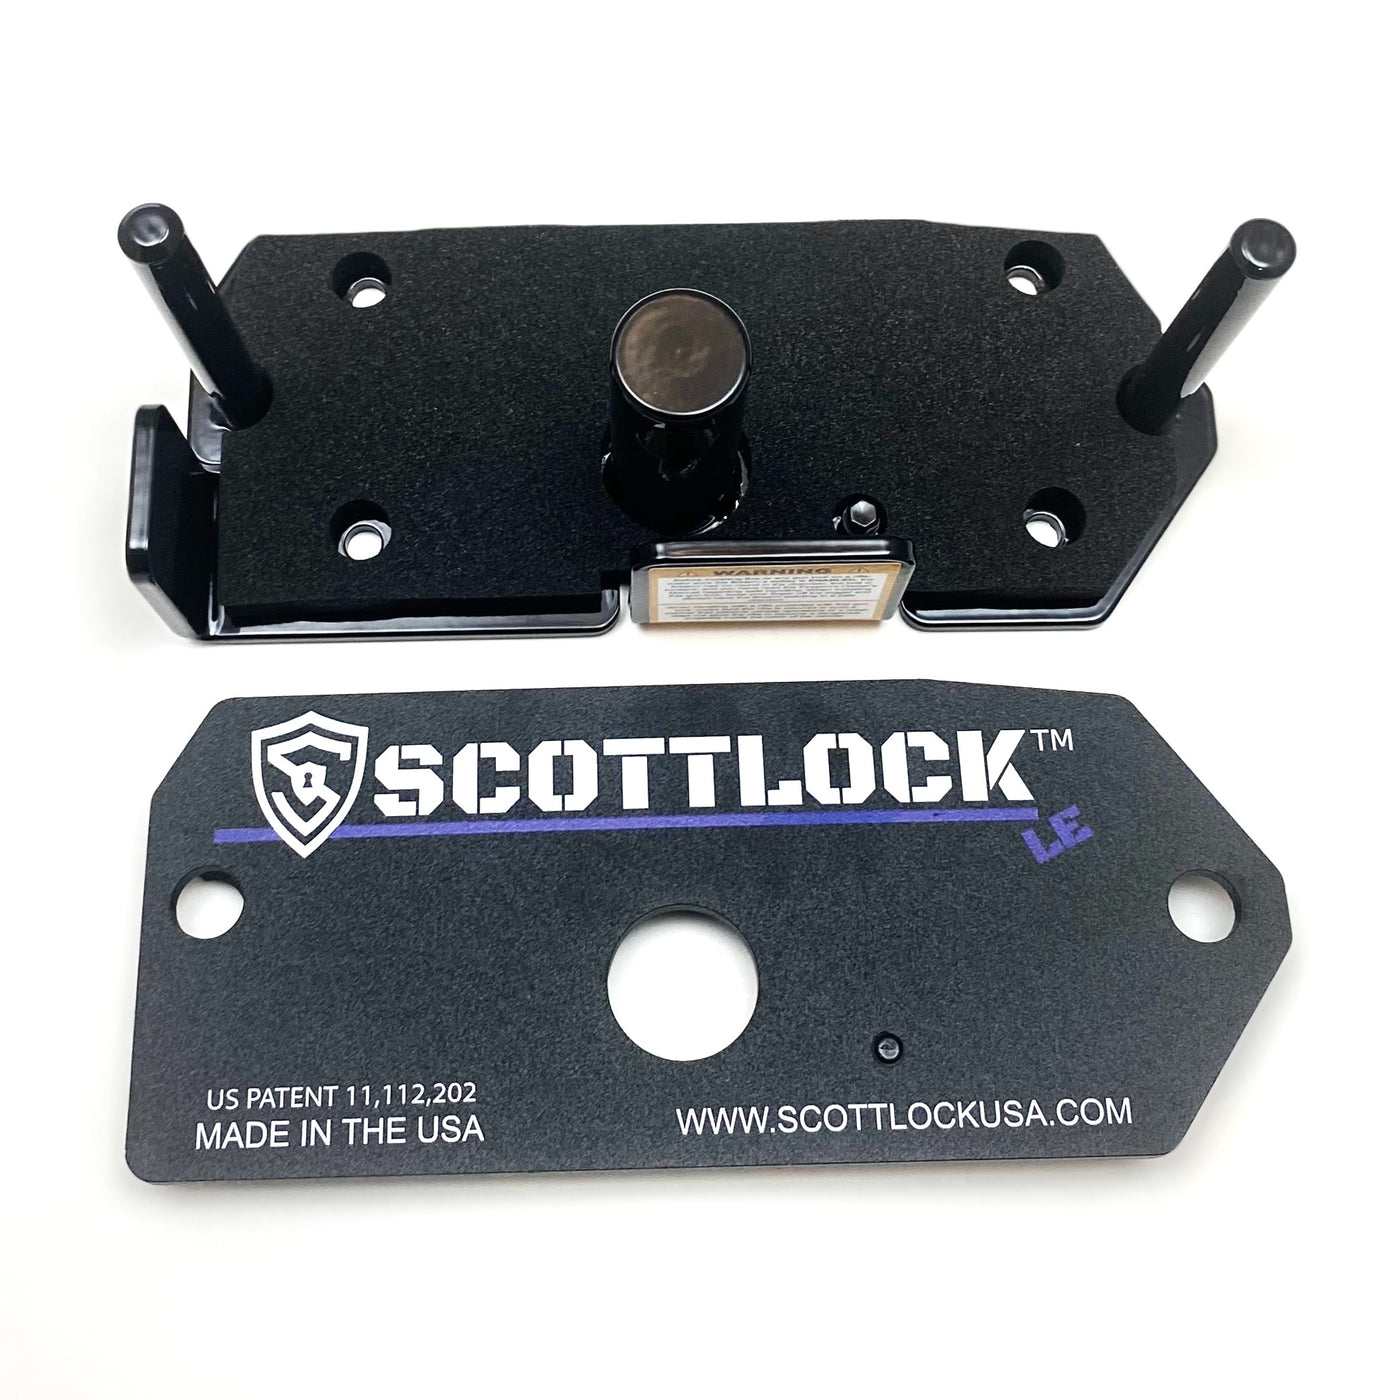 SCOTTLOCK™ LE (Law Enforcement) Portable AR15 Rifle Lock